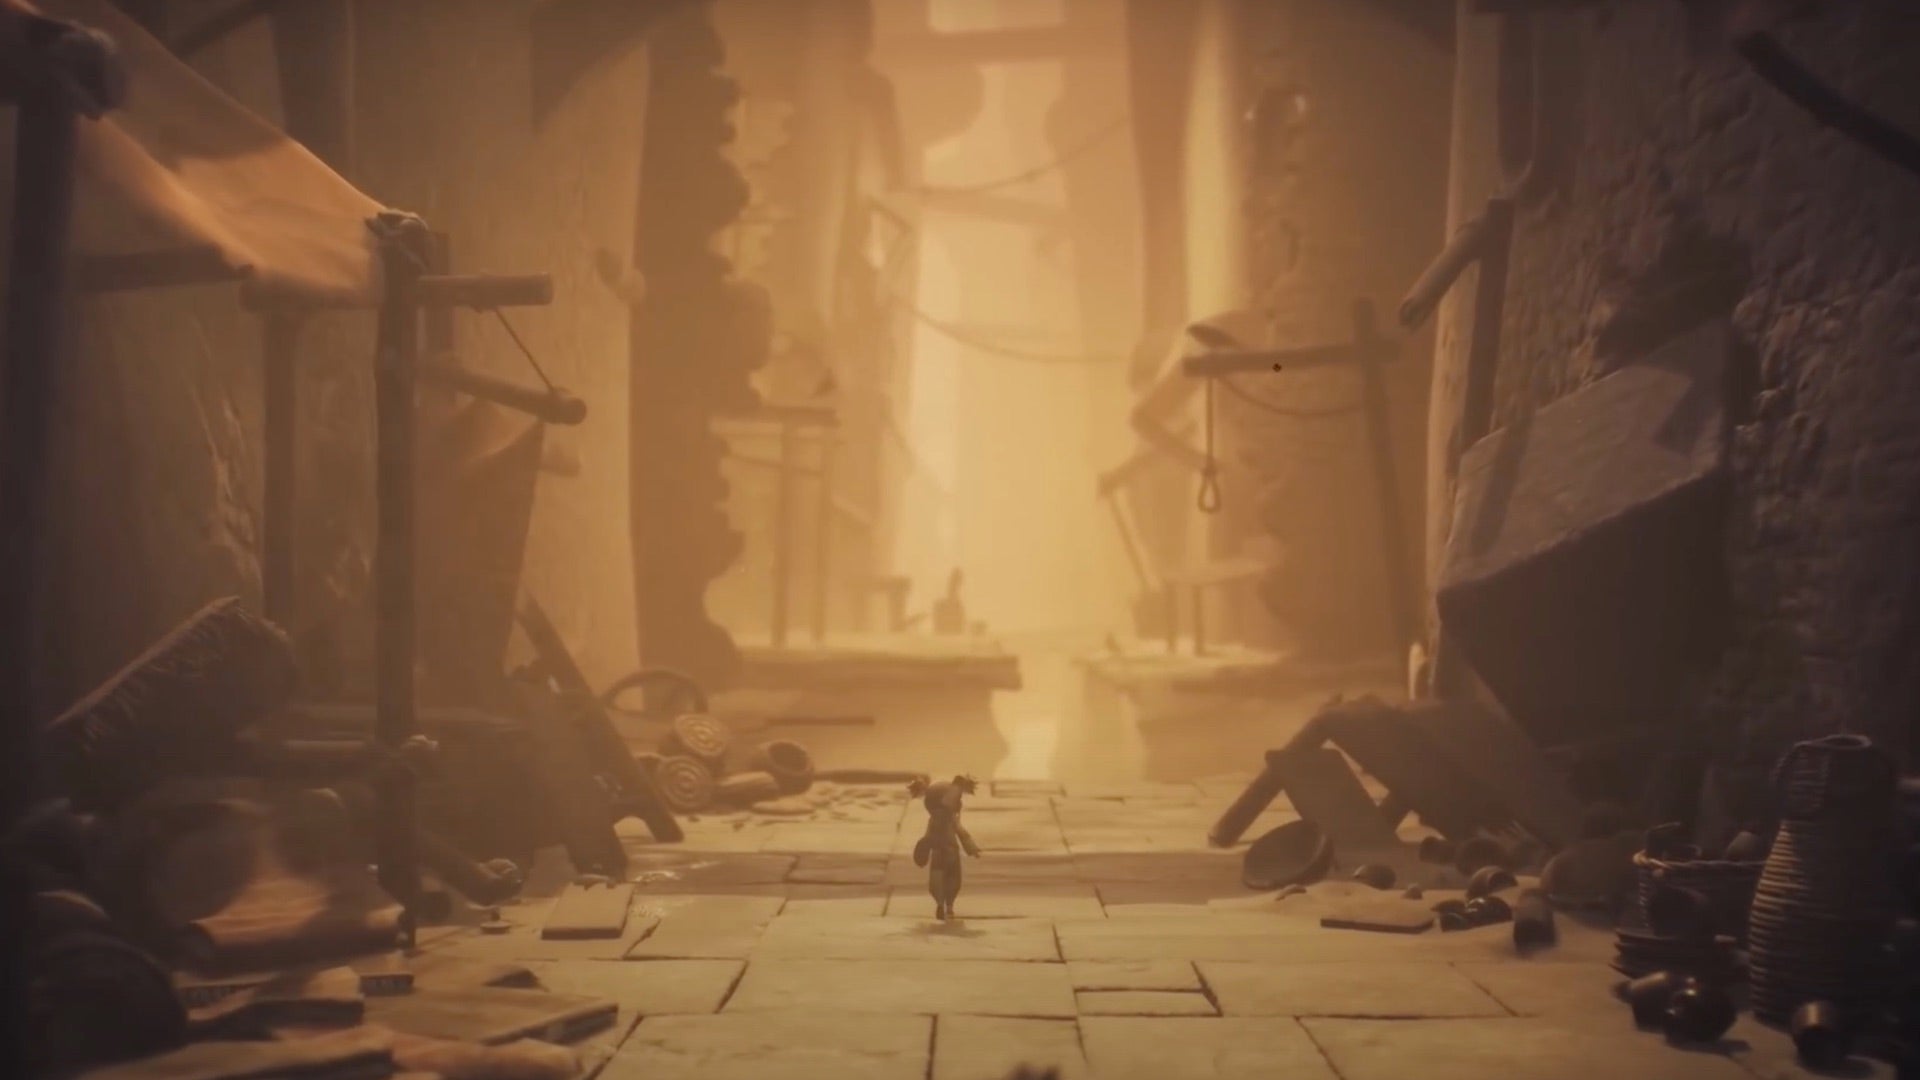 Capture d'écran de Little Nightmares 3 montrant l'un de ses deux protagonistes marchant le long des rues sablonneuses d'une ancienne cité en ruine, des étals de marché effondrés de chaque côté.